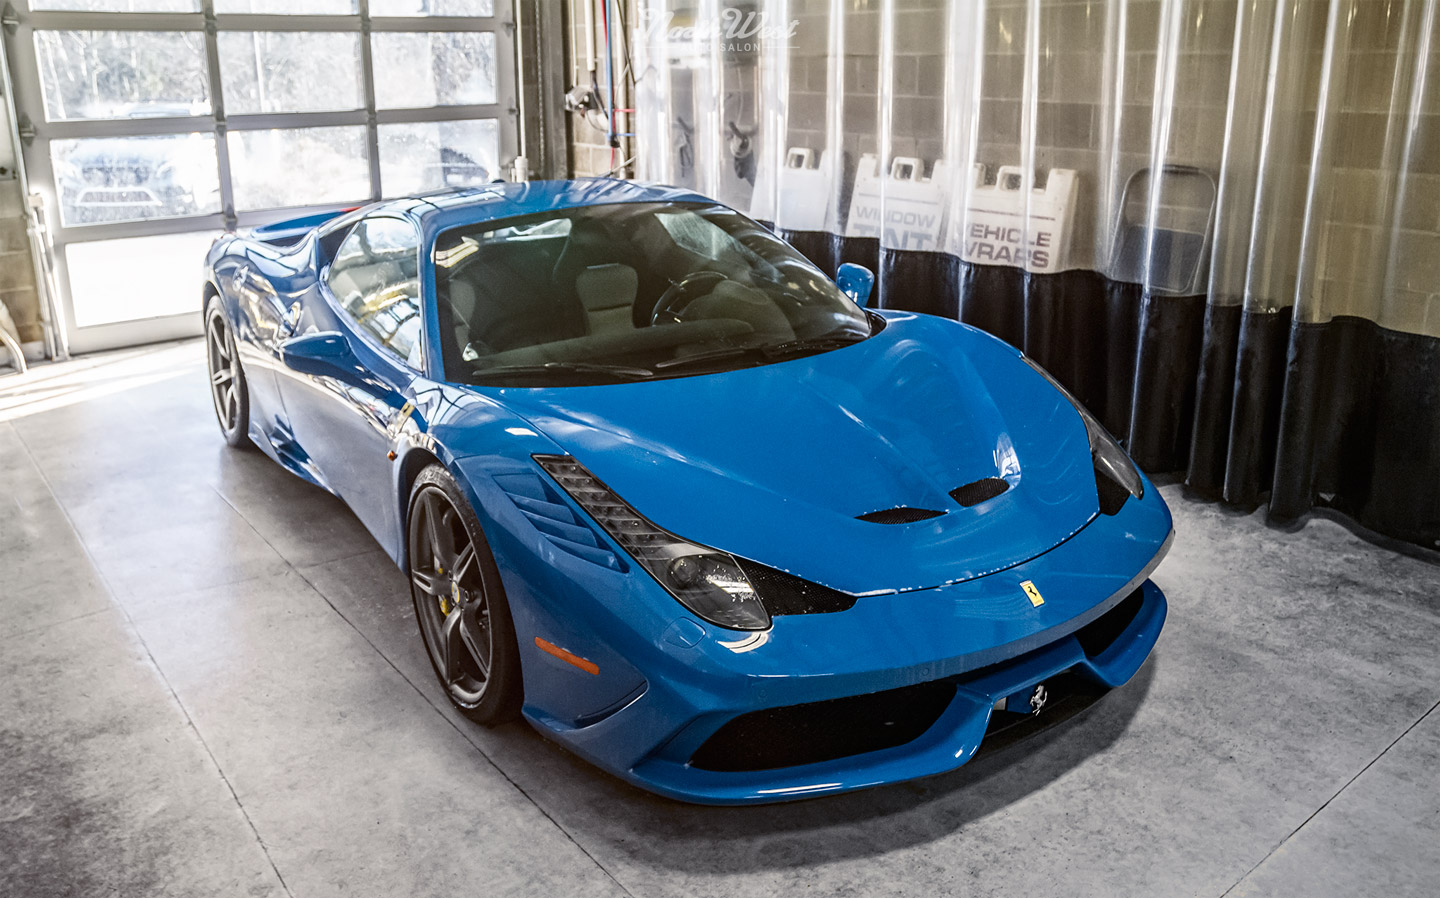 Azzurro-Dino-Ferrari-458-Speciale-New-car-detail-hand-wash-s